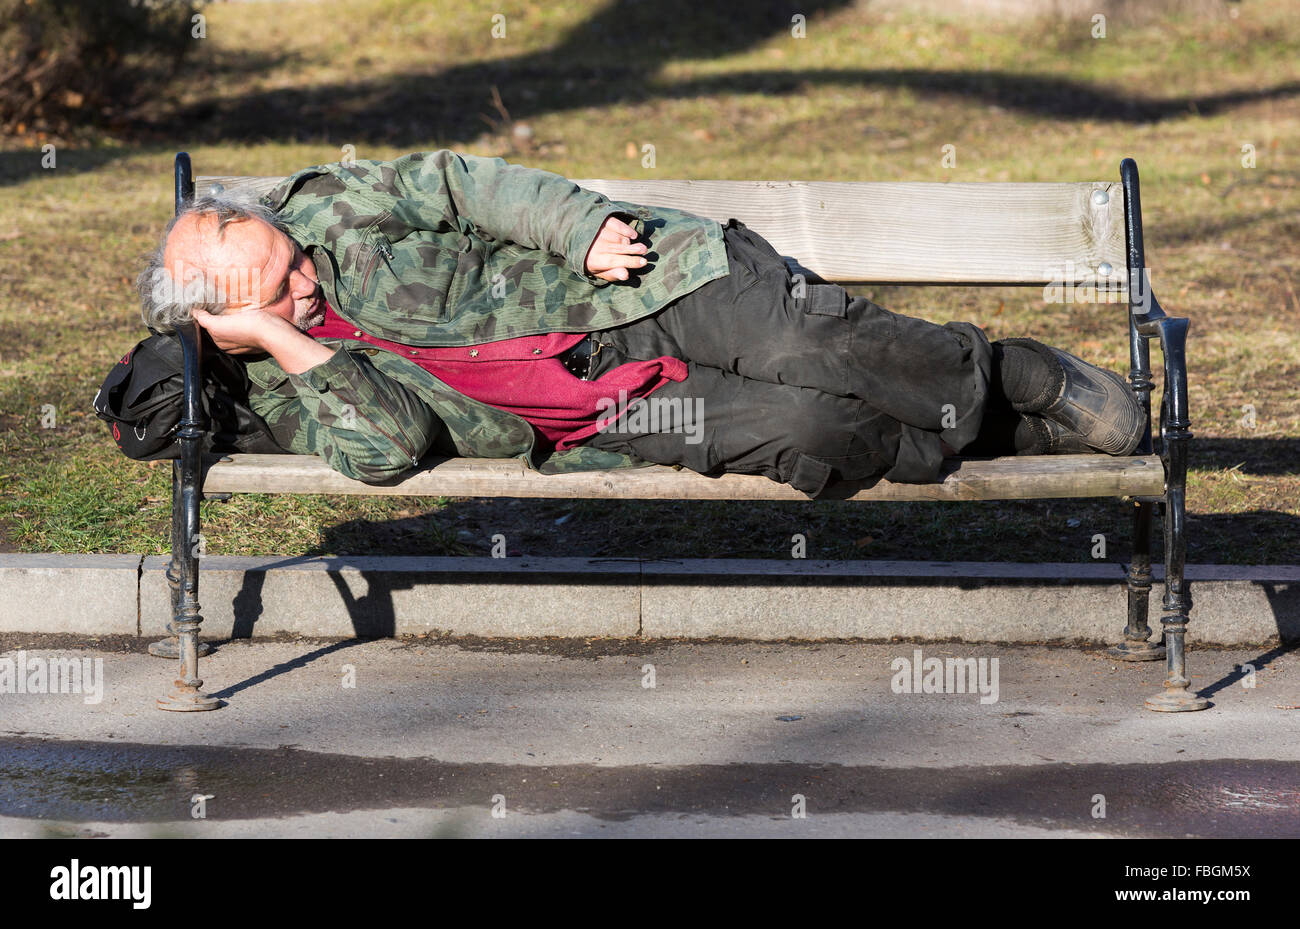 Sofia, Bulgarien - 14. Januar 2016: Obdachloser schläft sich auf einer Bank in Sofia. Bulgarien ist EU ärmste Land. Stockfoto